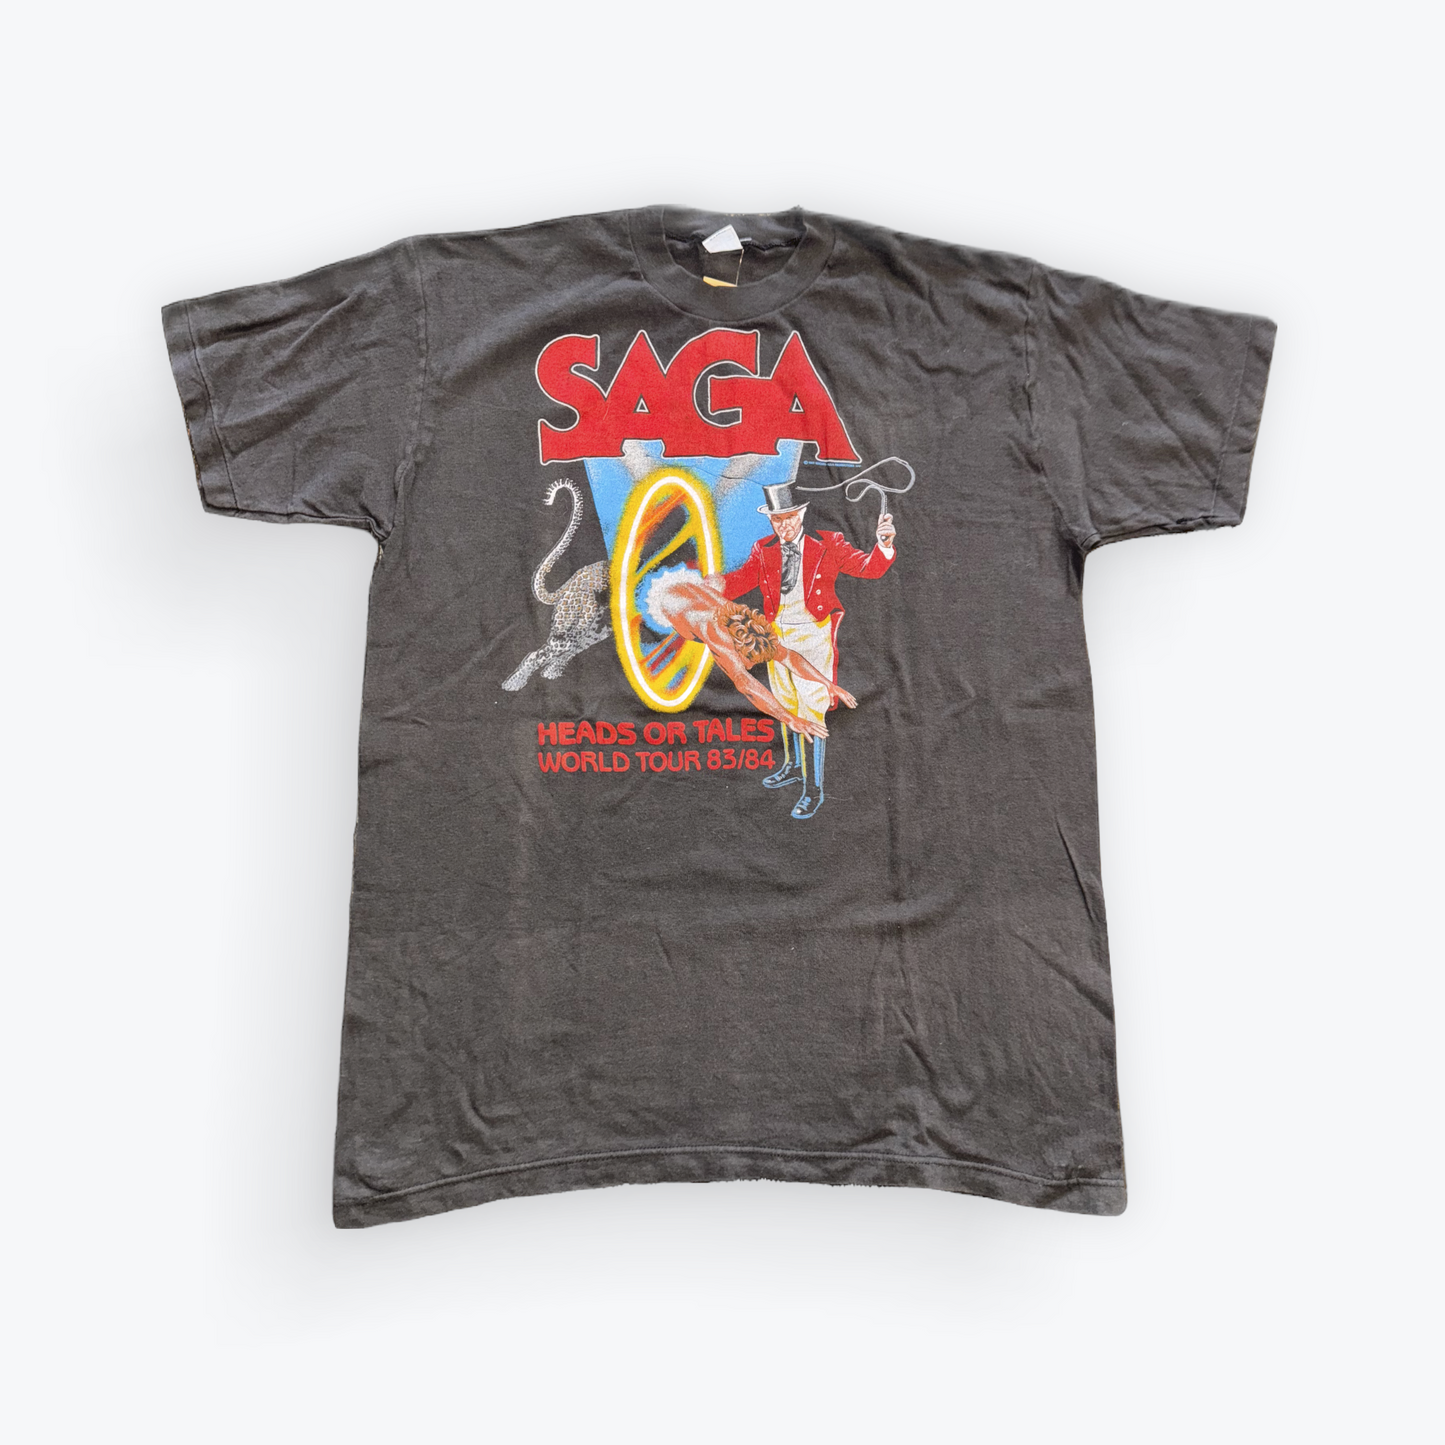 Vintage 1983 SAGA Band Tee